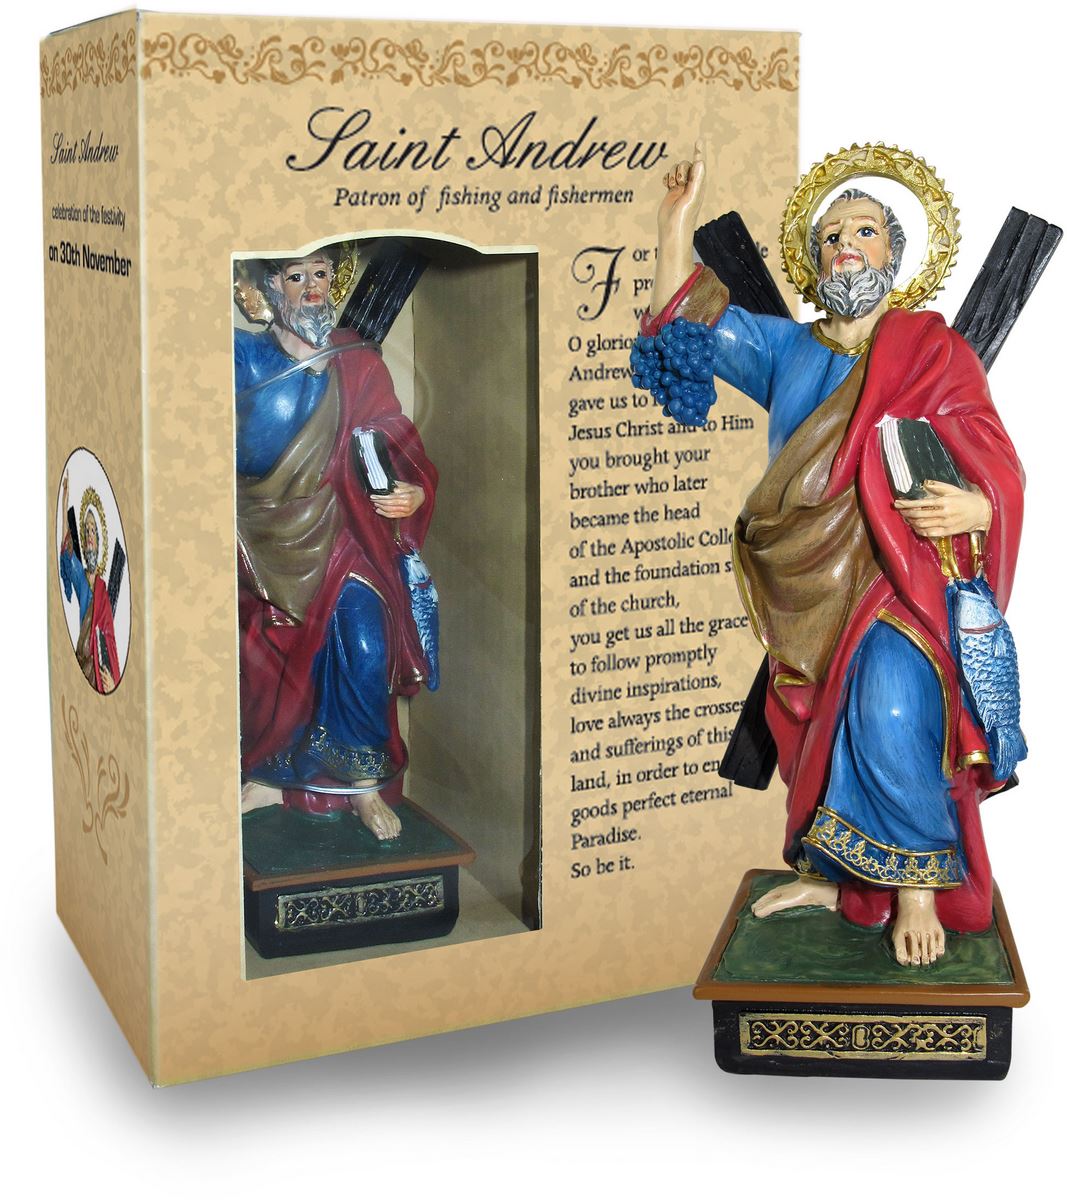 statua di sant'andrea da 12 cm in confezione regalo con segnalibro in versione inglese